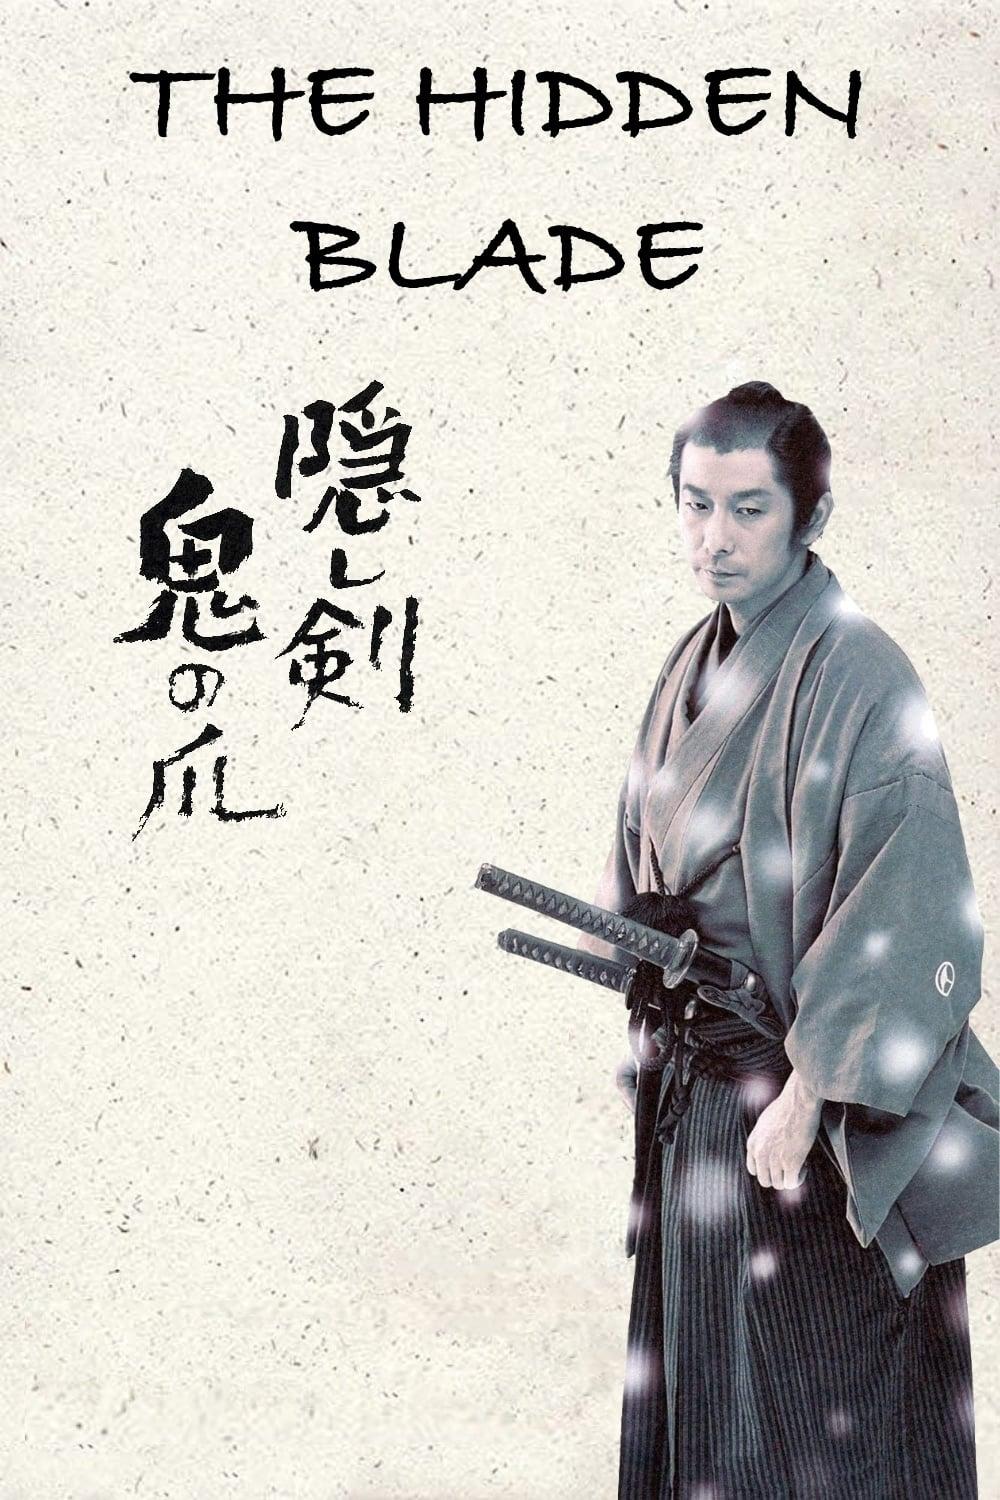 The Hidden Blade poster